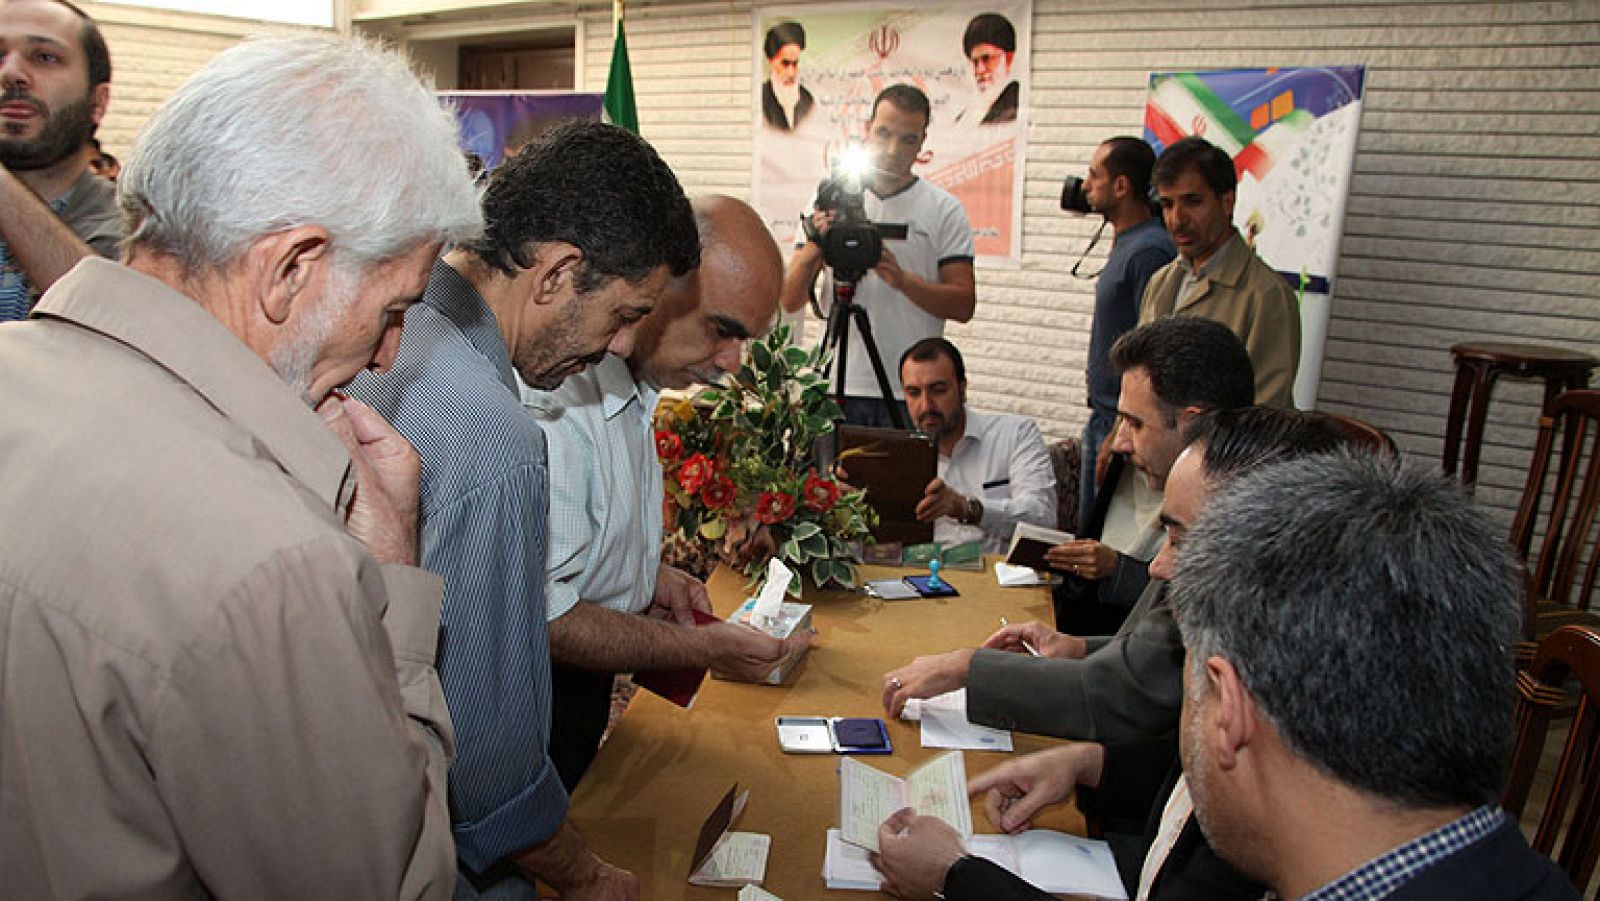  En Irán espera los resultados después del cierre de los colegios electorales. Terminado el mandato de Ahmadineyad, 50 millones de iraníes estaban llamados a elegir a su nuevo presidente. Hay pocas oportunidades para la reforma, porque todos los candidatos son fieles a la ortodoxia del régimen.